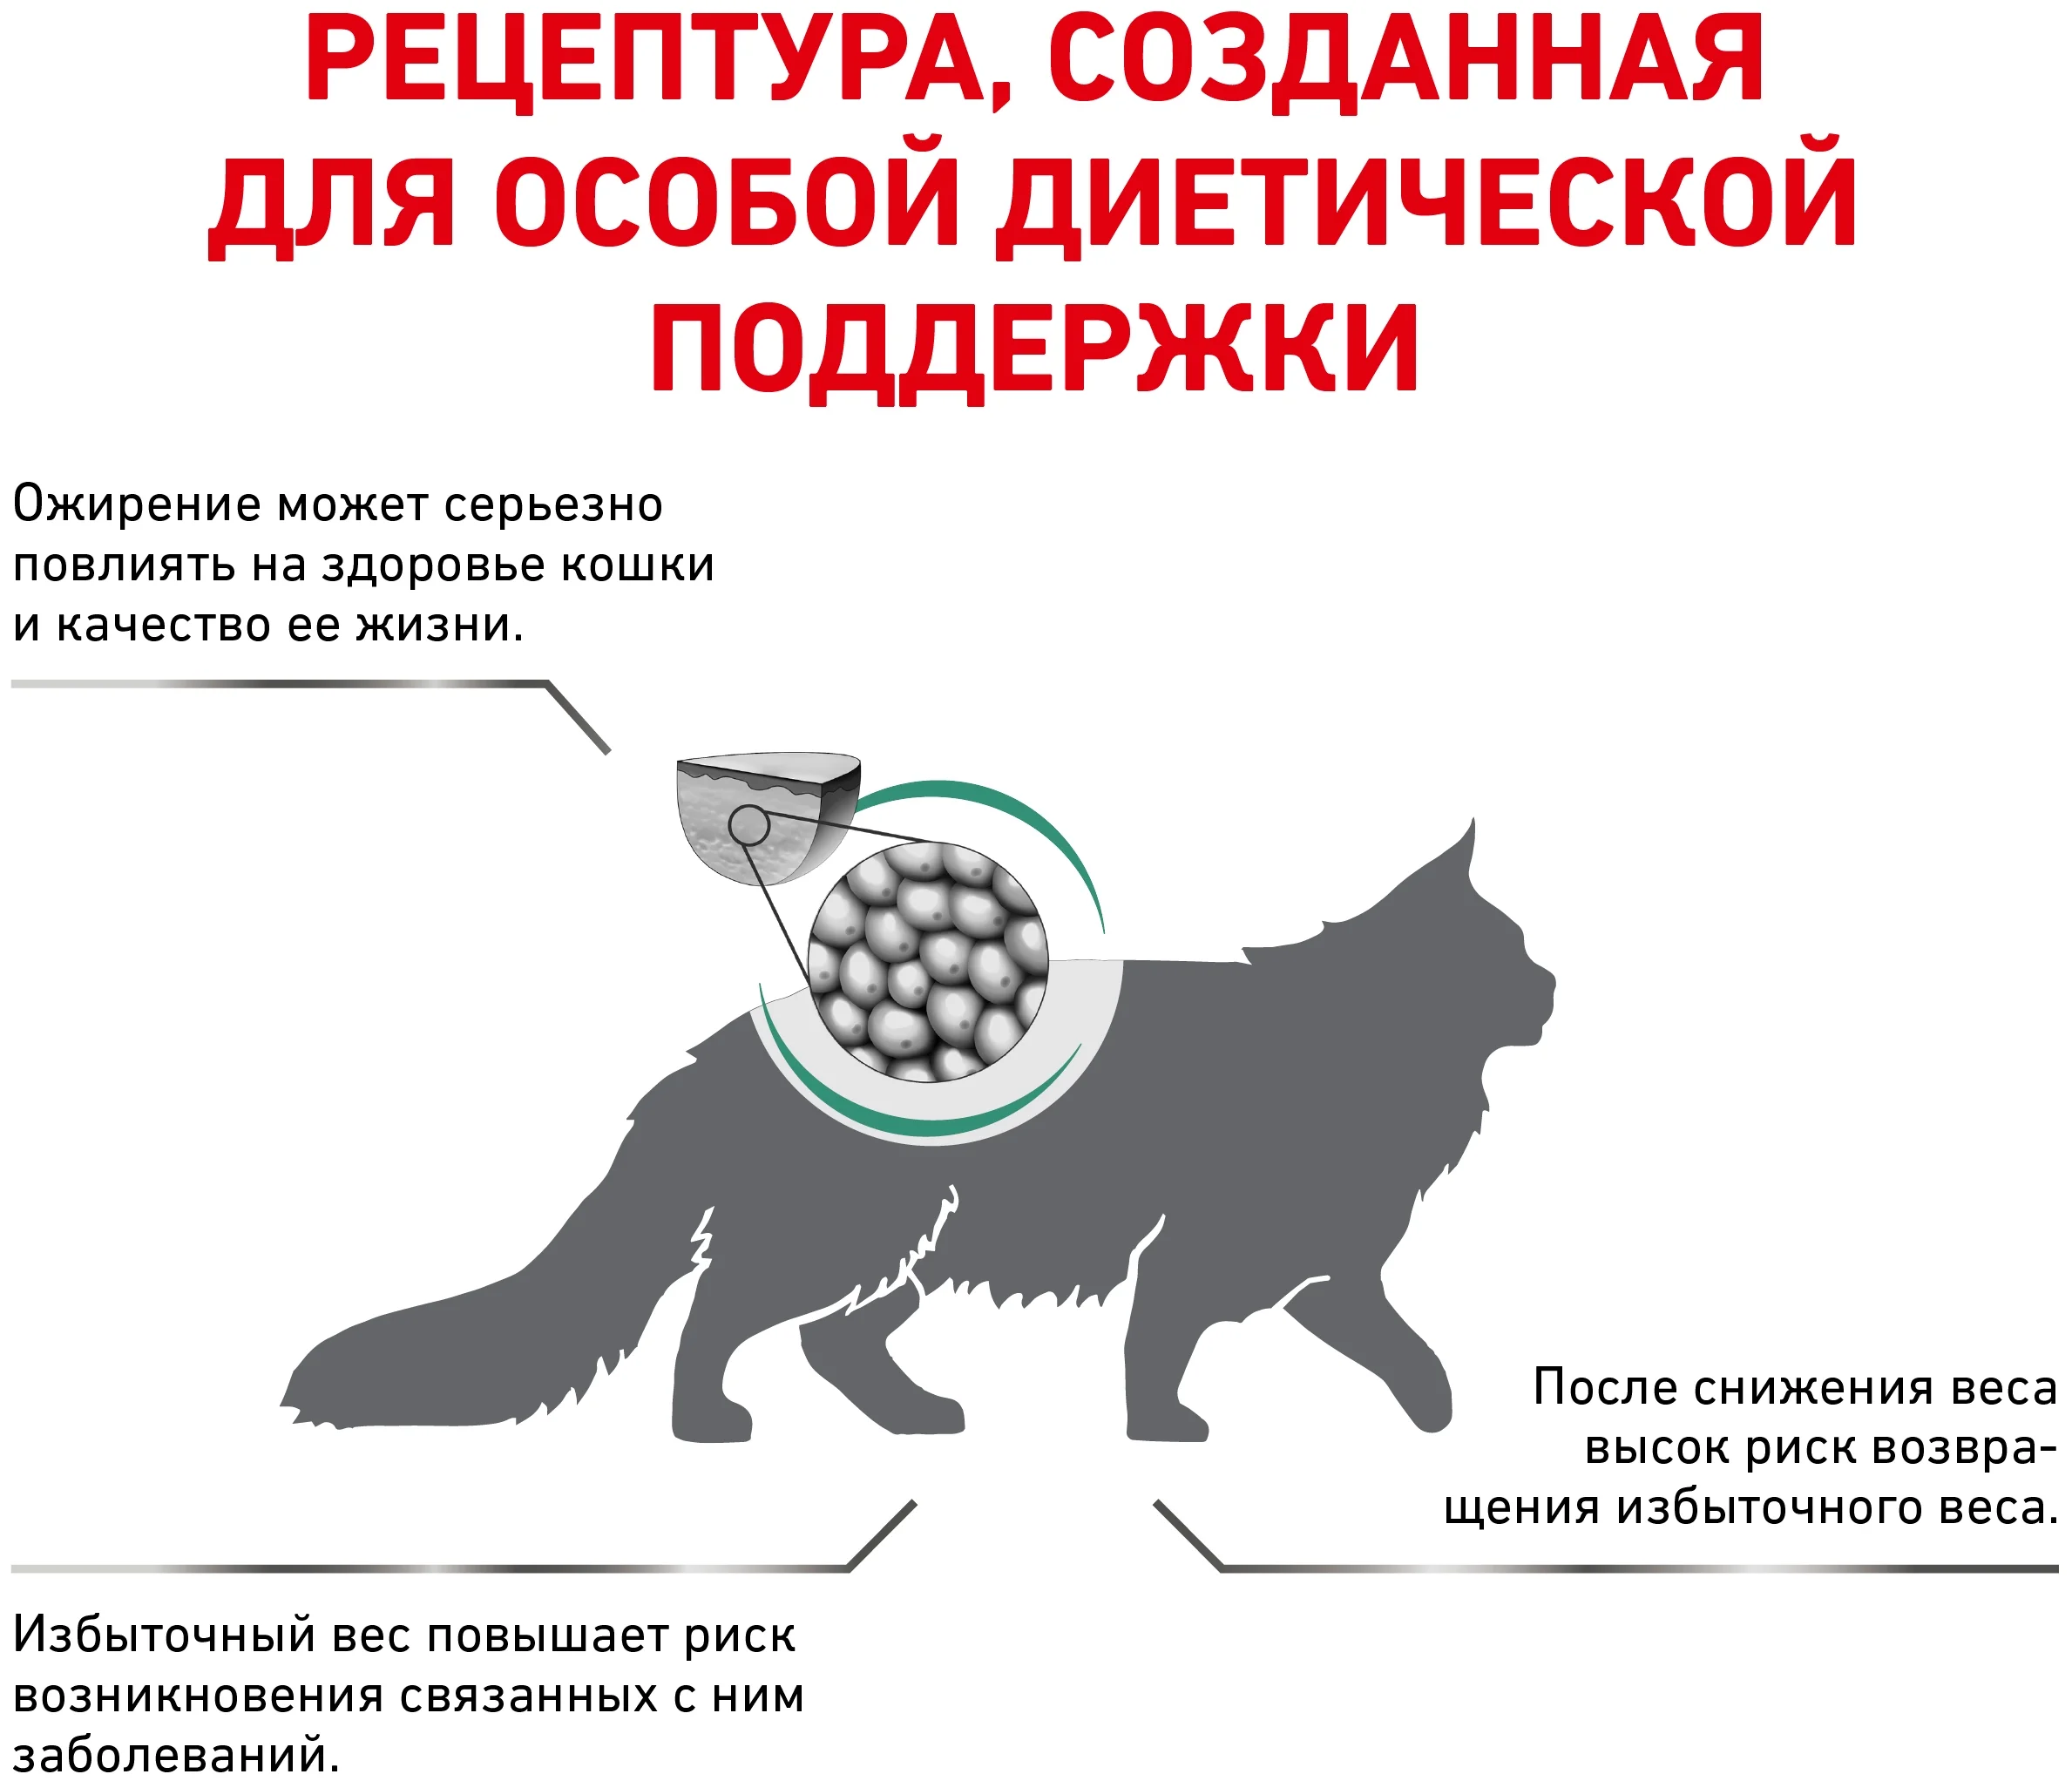 Сухой корм для кошек для снижения веса Royal Canin Satiety Weight Management 1,5 кг